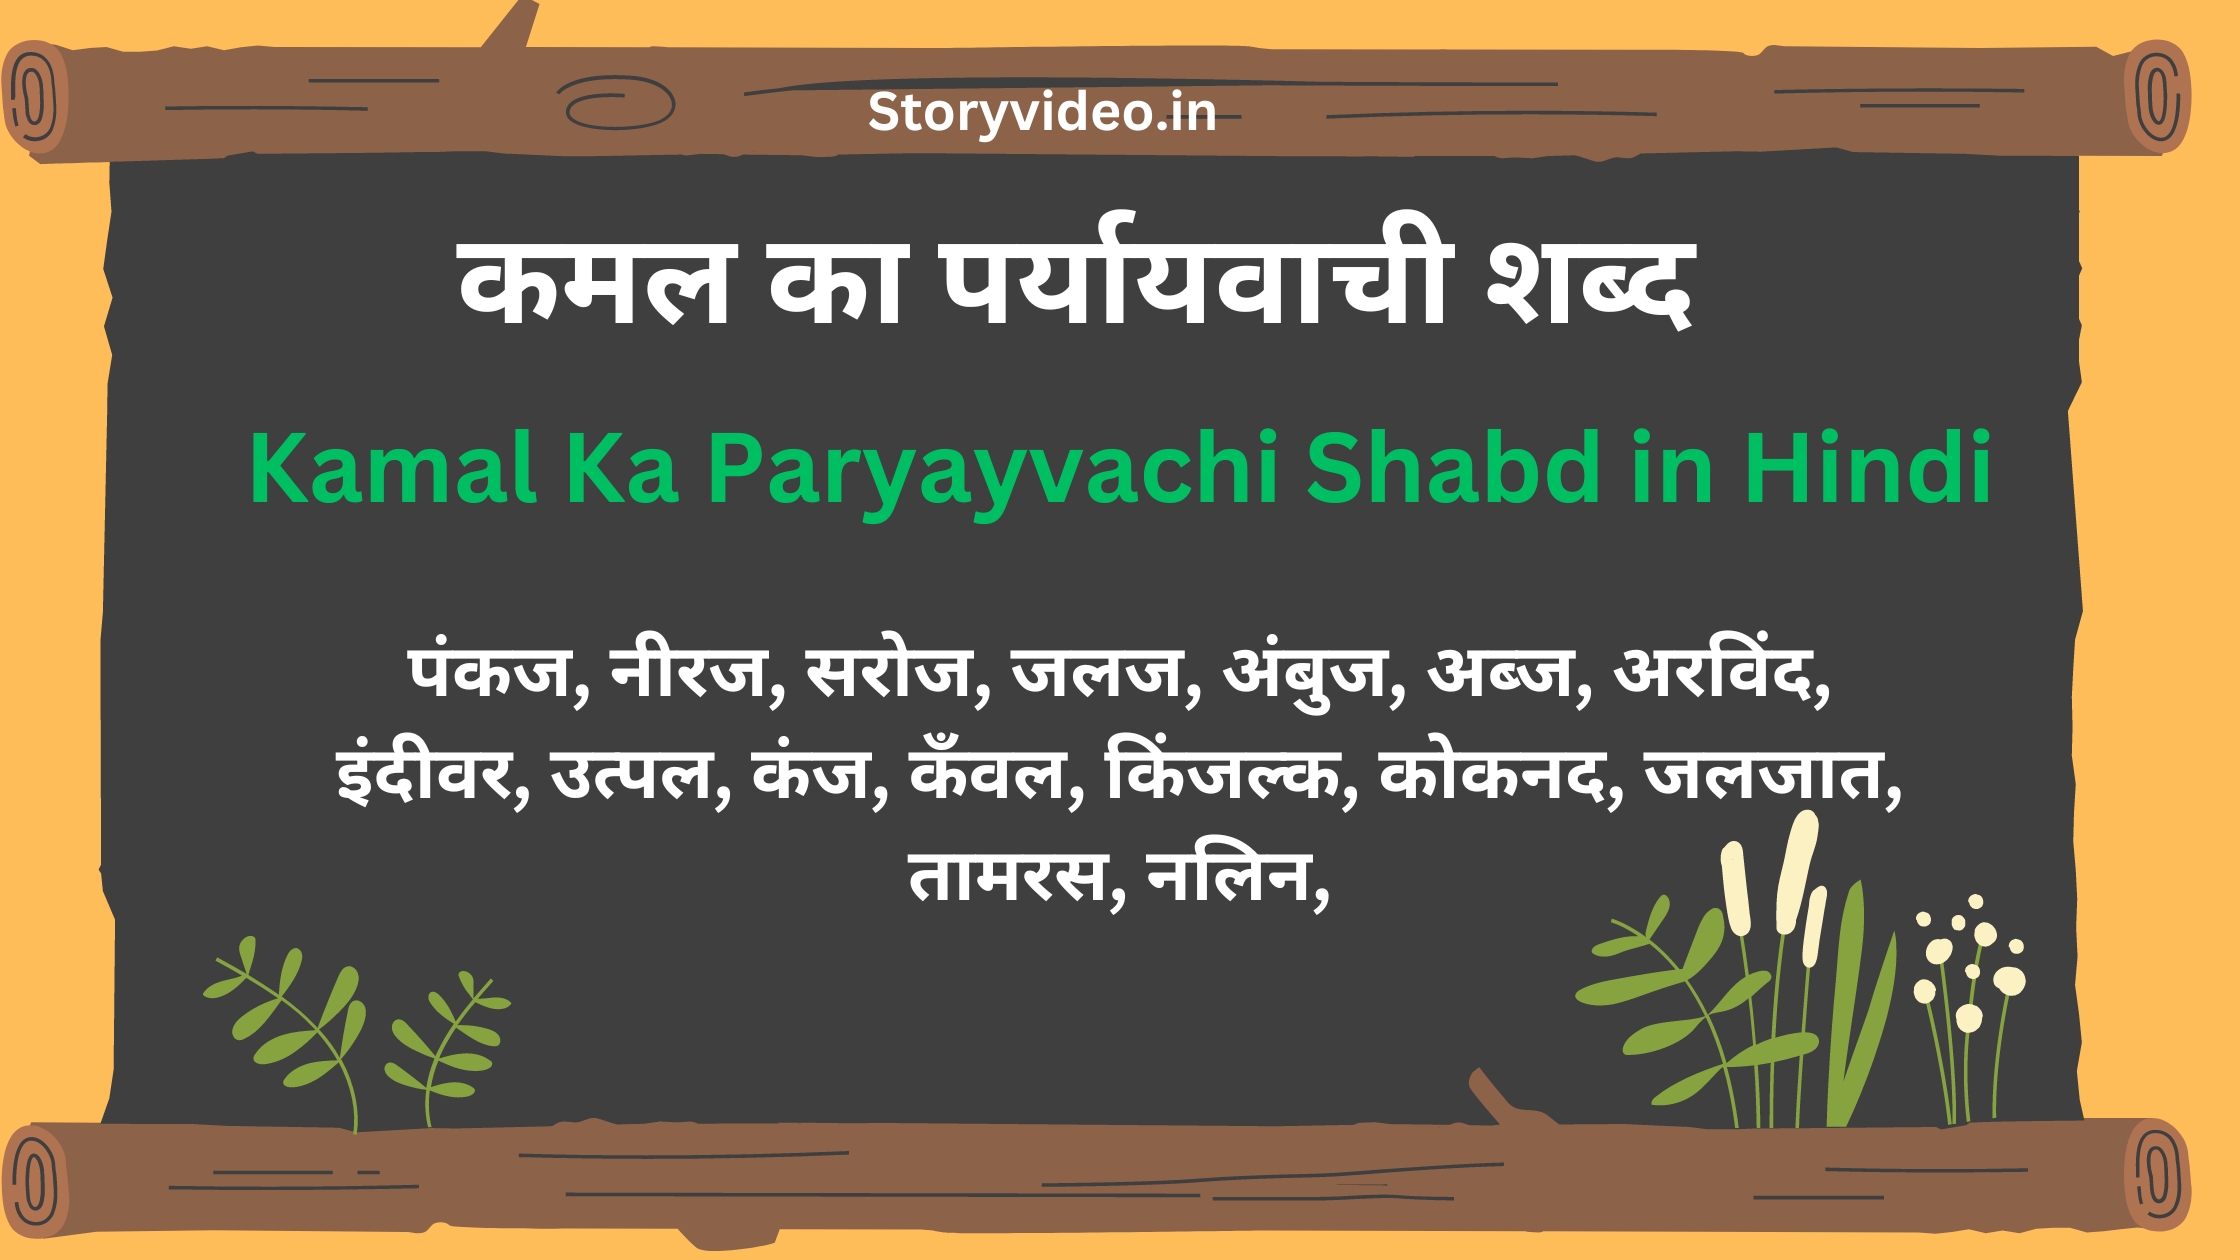 Kamal Ka Paryayvachi Shabd in Hindi